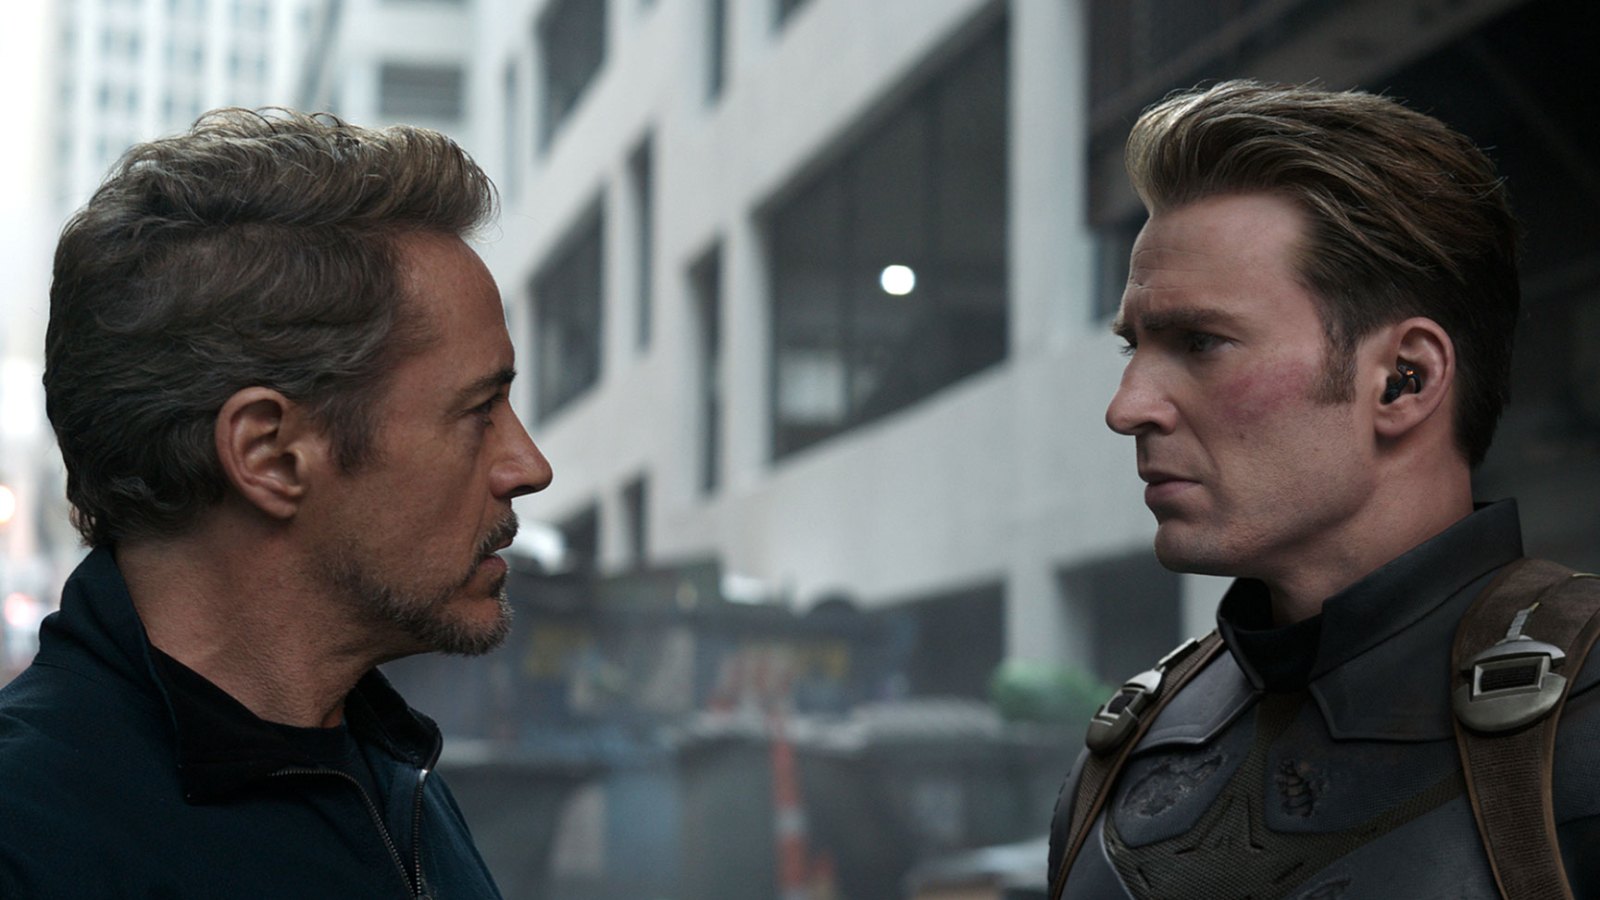 MTV Movie Awards Avengers Endgame Robert Downey Jr. and Chris Evans